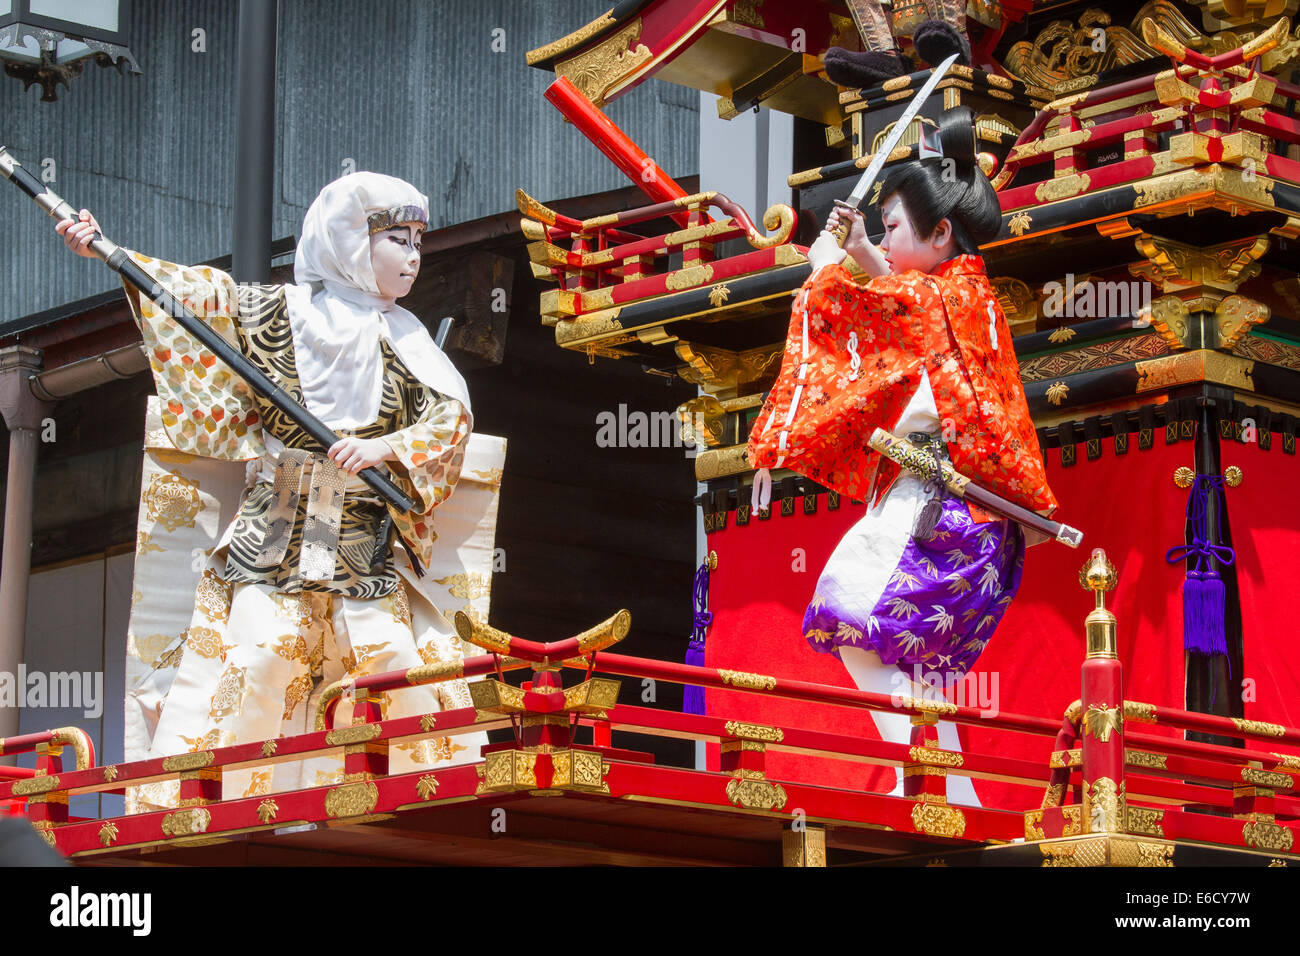 Les enfants participant à une performance au sommet d'un Kabuki yatai (festival de flottement) pendant le Festival, Hida-Furukawa Furukawa, au Japon. Banque D'Images